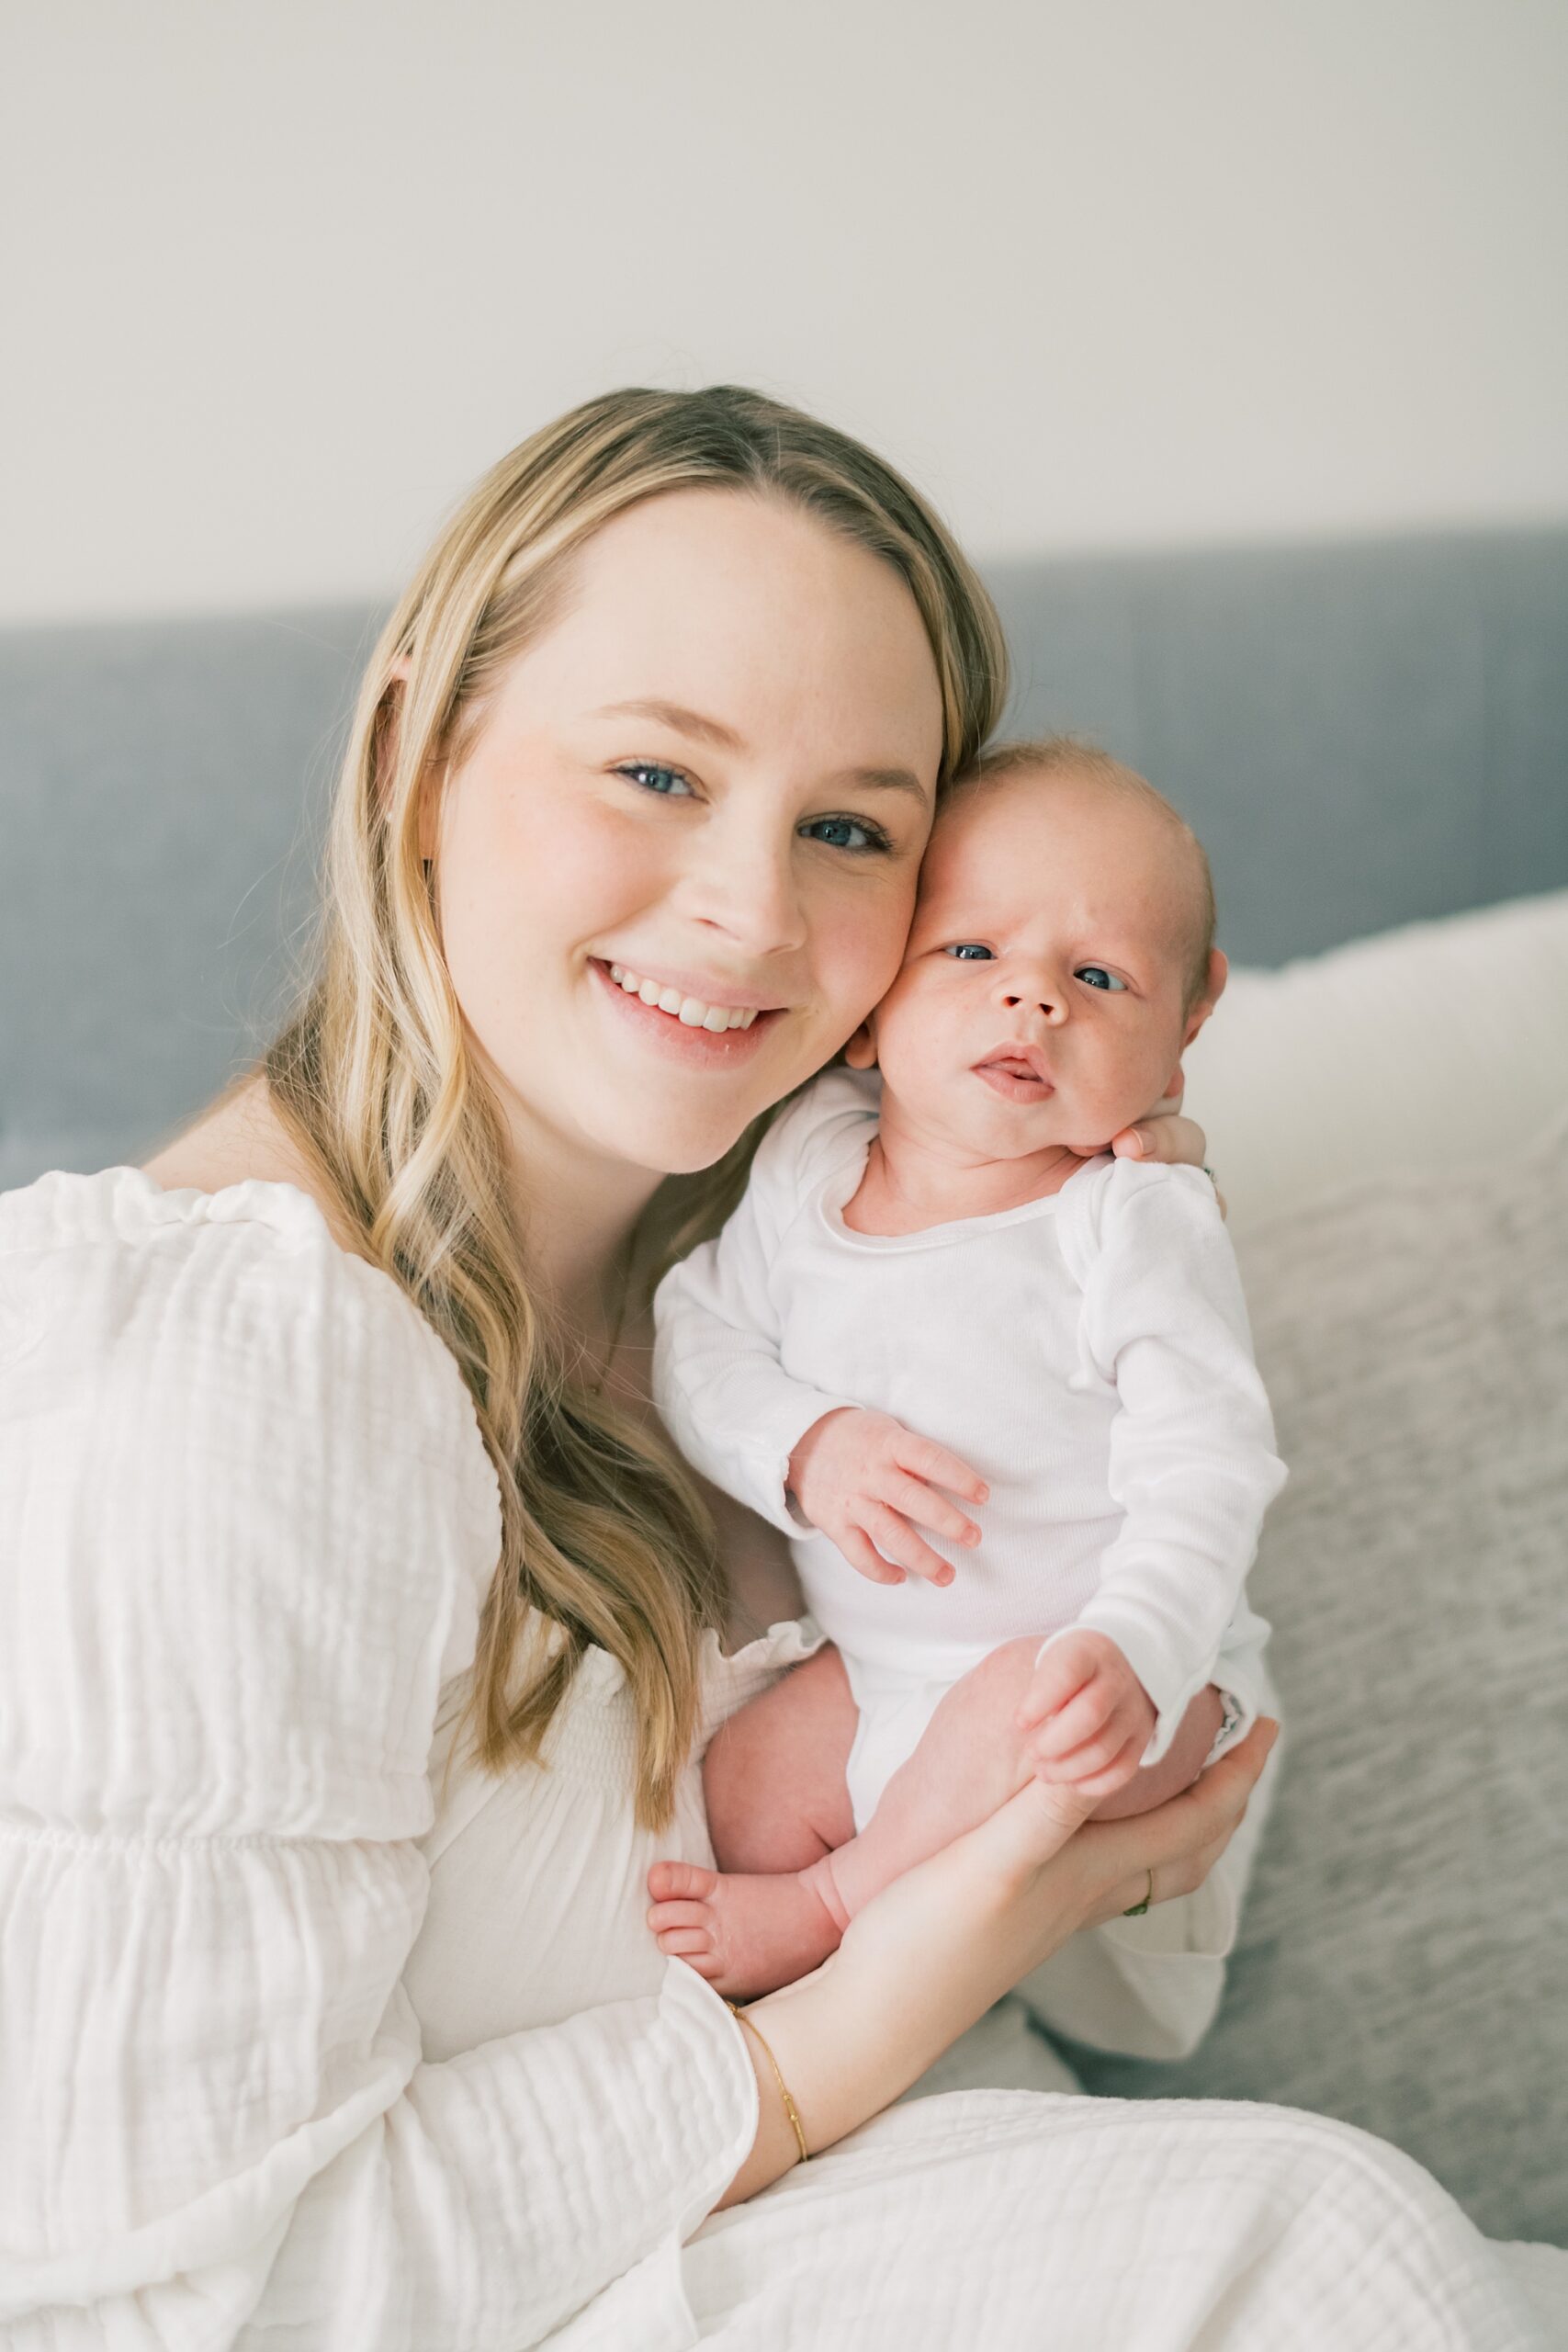 mom holds newborn son against cheek in white onesie during in-home newborn portraits